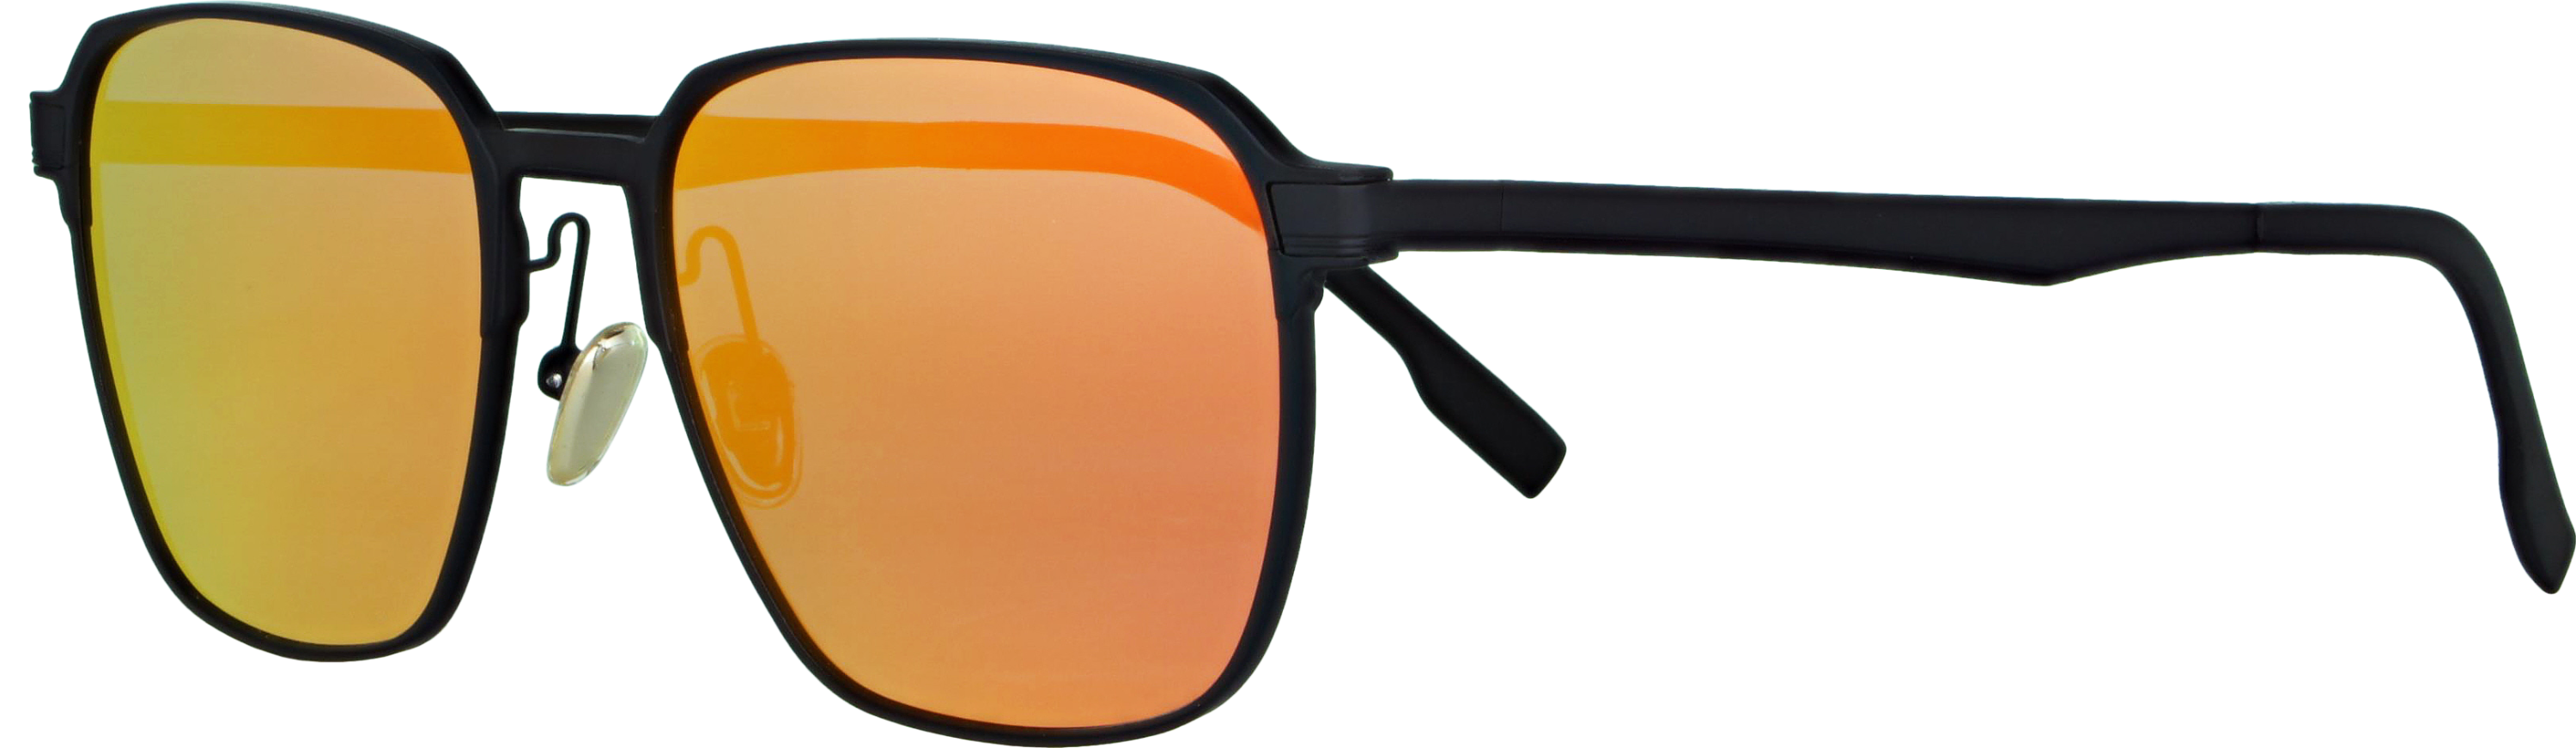 Das Bild zeigt die Sonnenbrille 719171 von der Marke Abele Optik in schwarz.